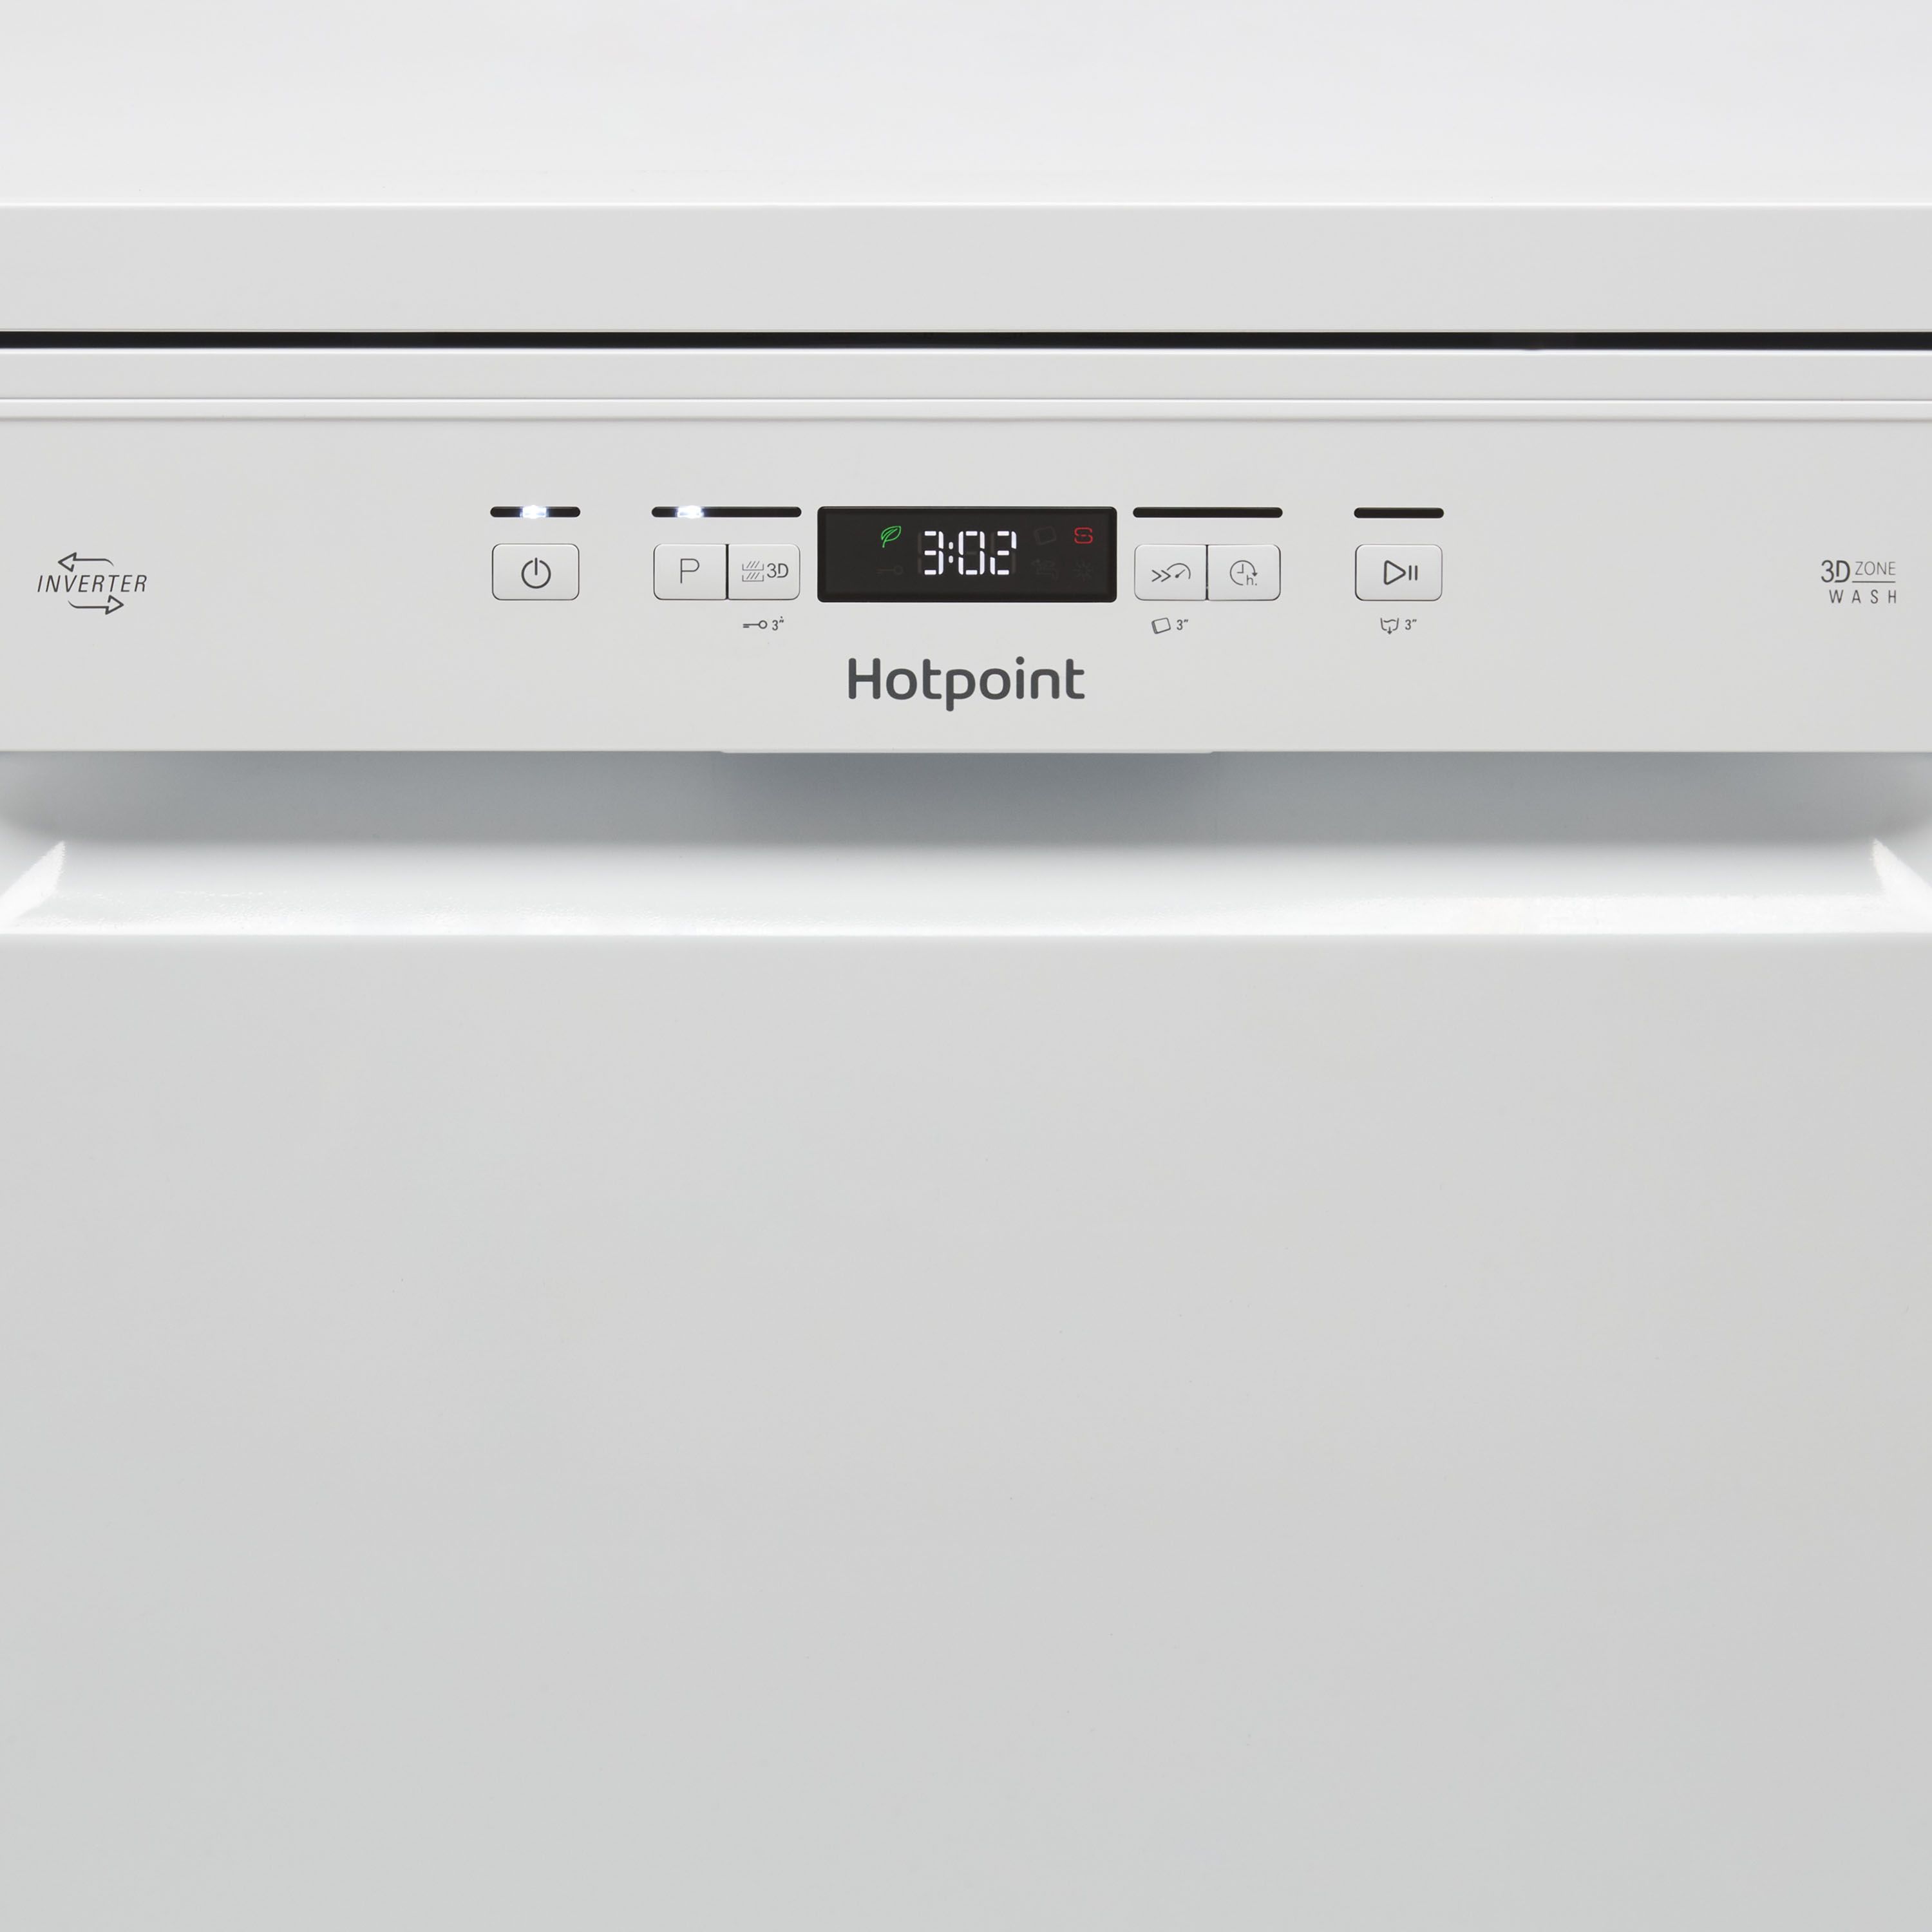 Hotpoint HFC3C26WCUK Freestanding Full size Dishwasher - White